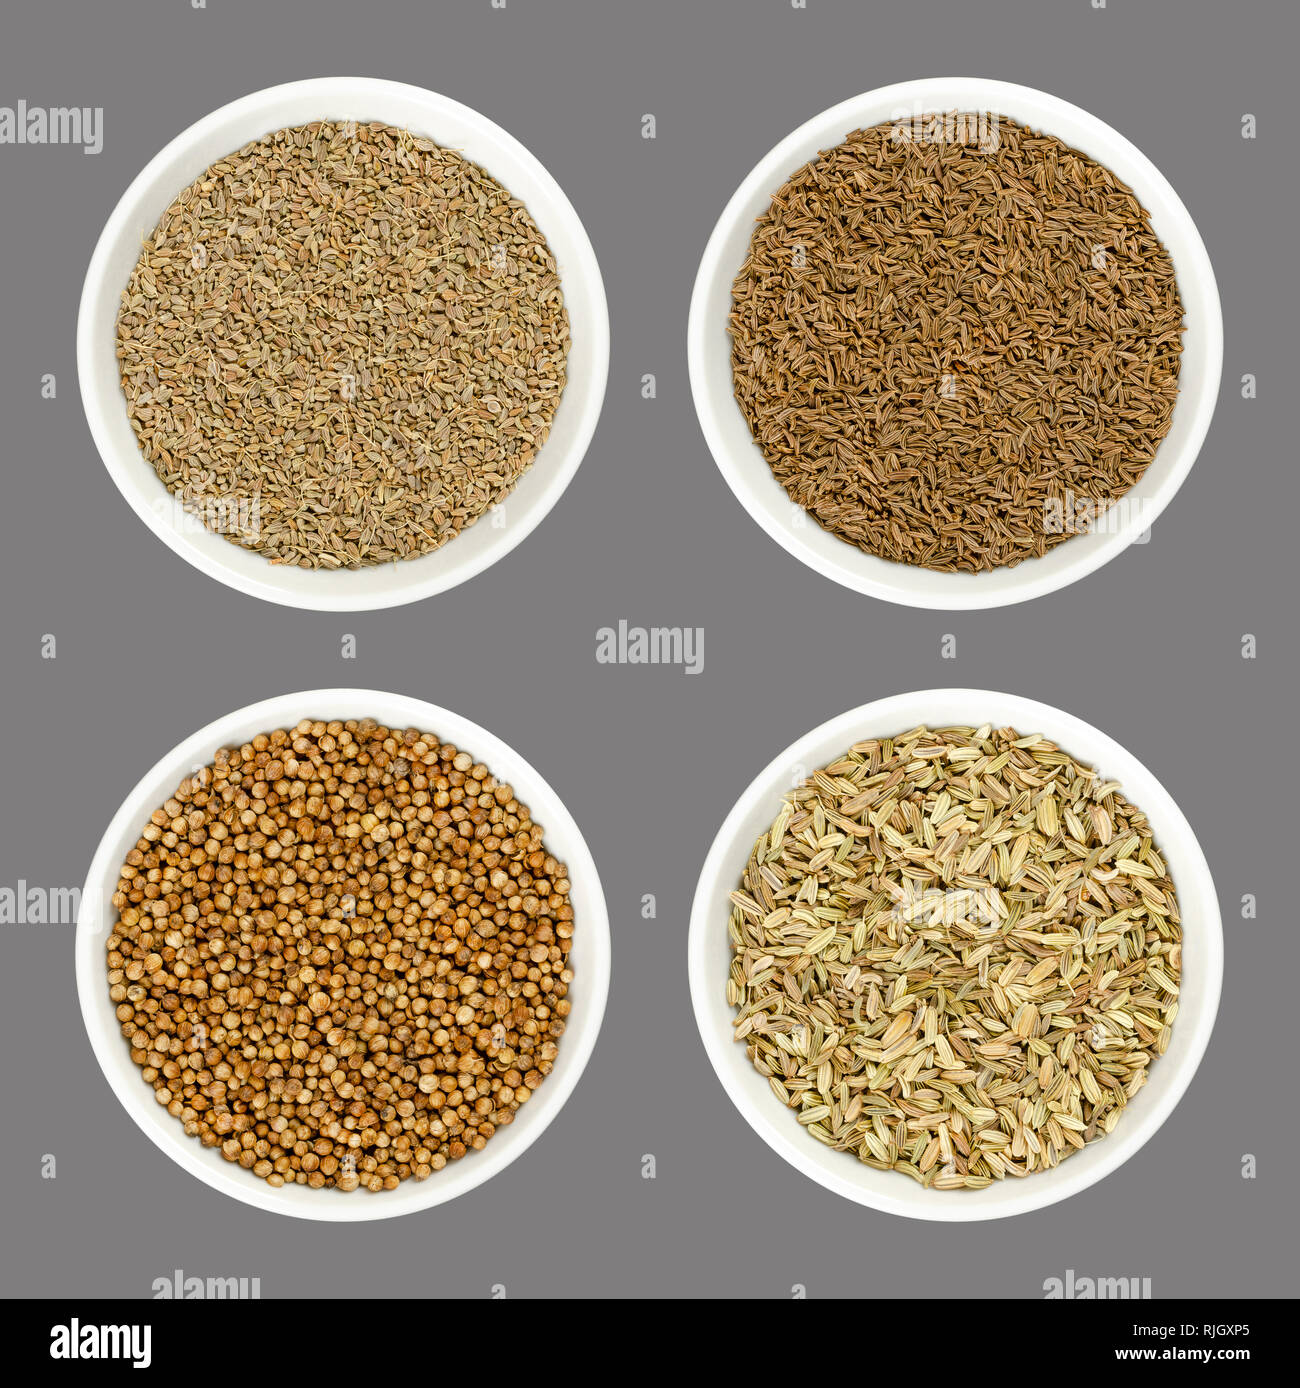 Anice, cumino, coriandolo e semi di finocchio in bianco a bocce. Anche i semi di anice, persiano di cumino o coriandolo. Spezie secche al sapore di pane. Foto Stock